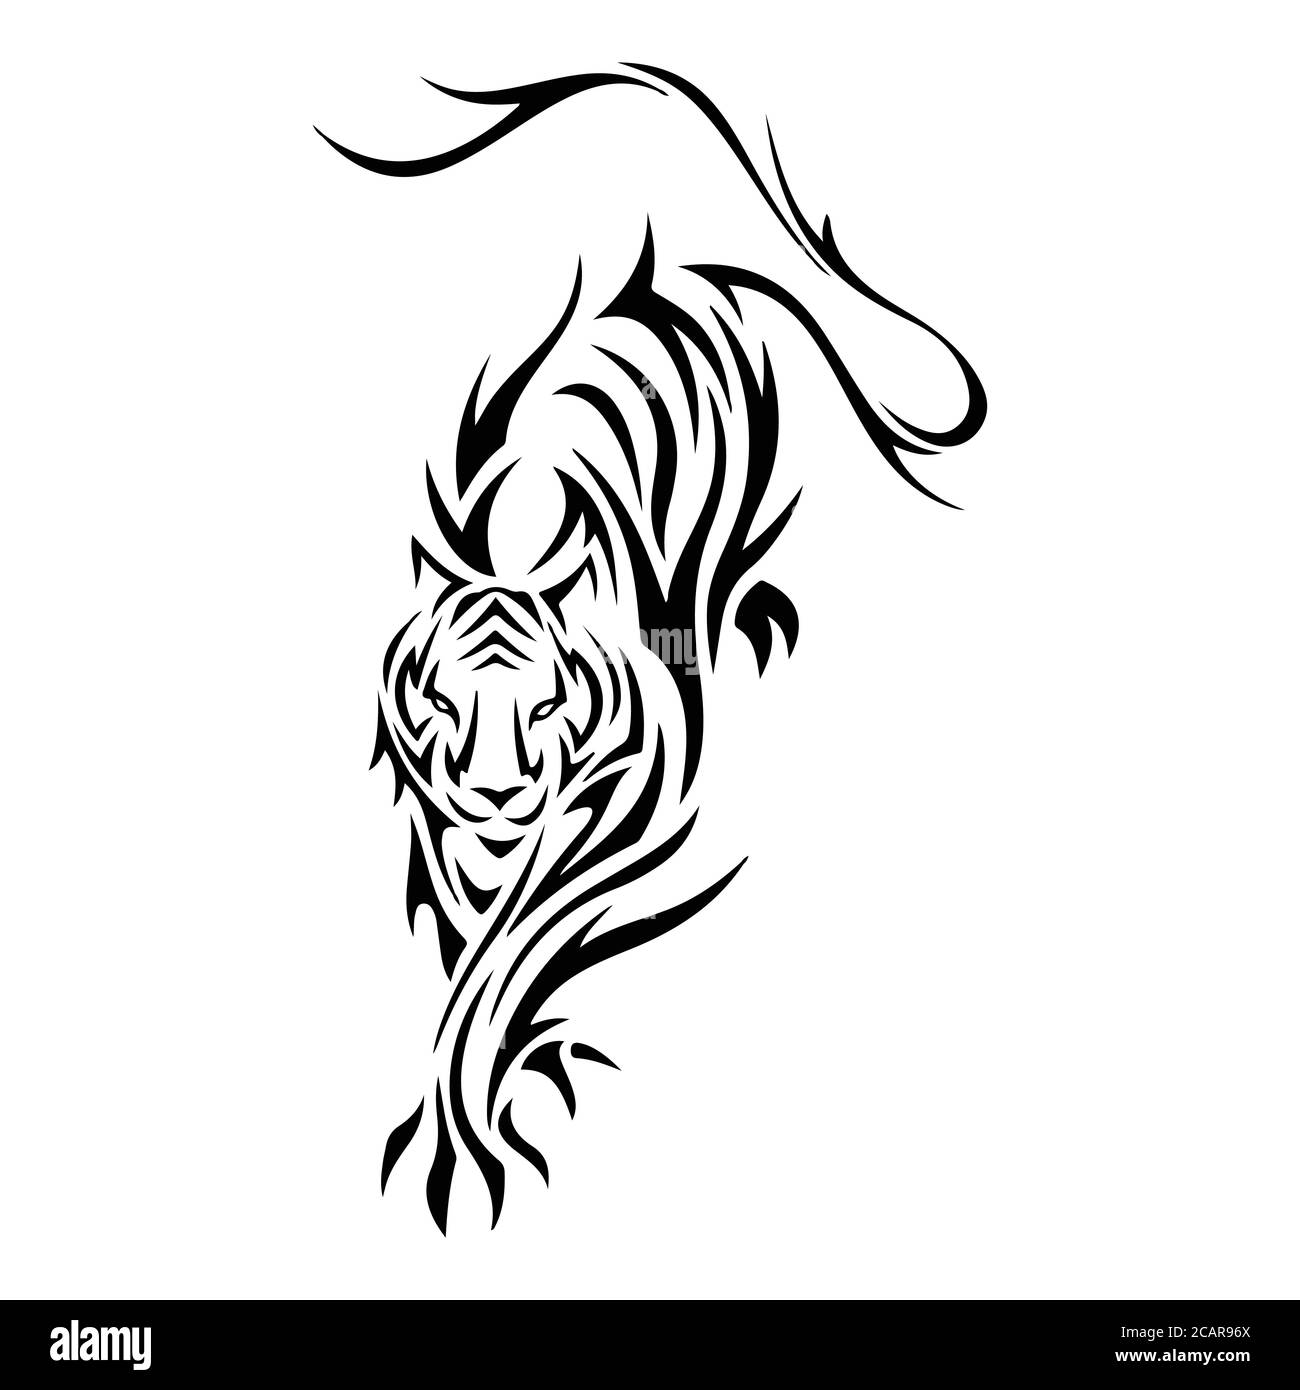 Tiger Tattoo Vektor Illustration. Silhouette Vektordarstellung isoliert auf weißem Hintergrund. Stock Vektor